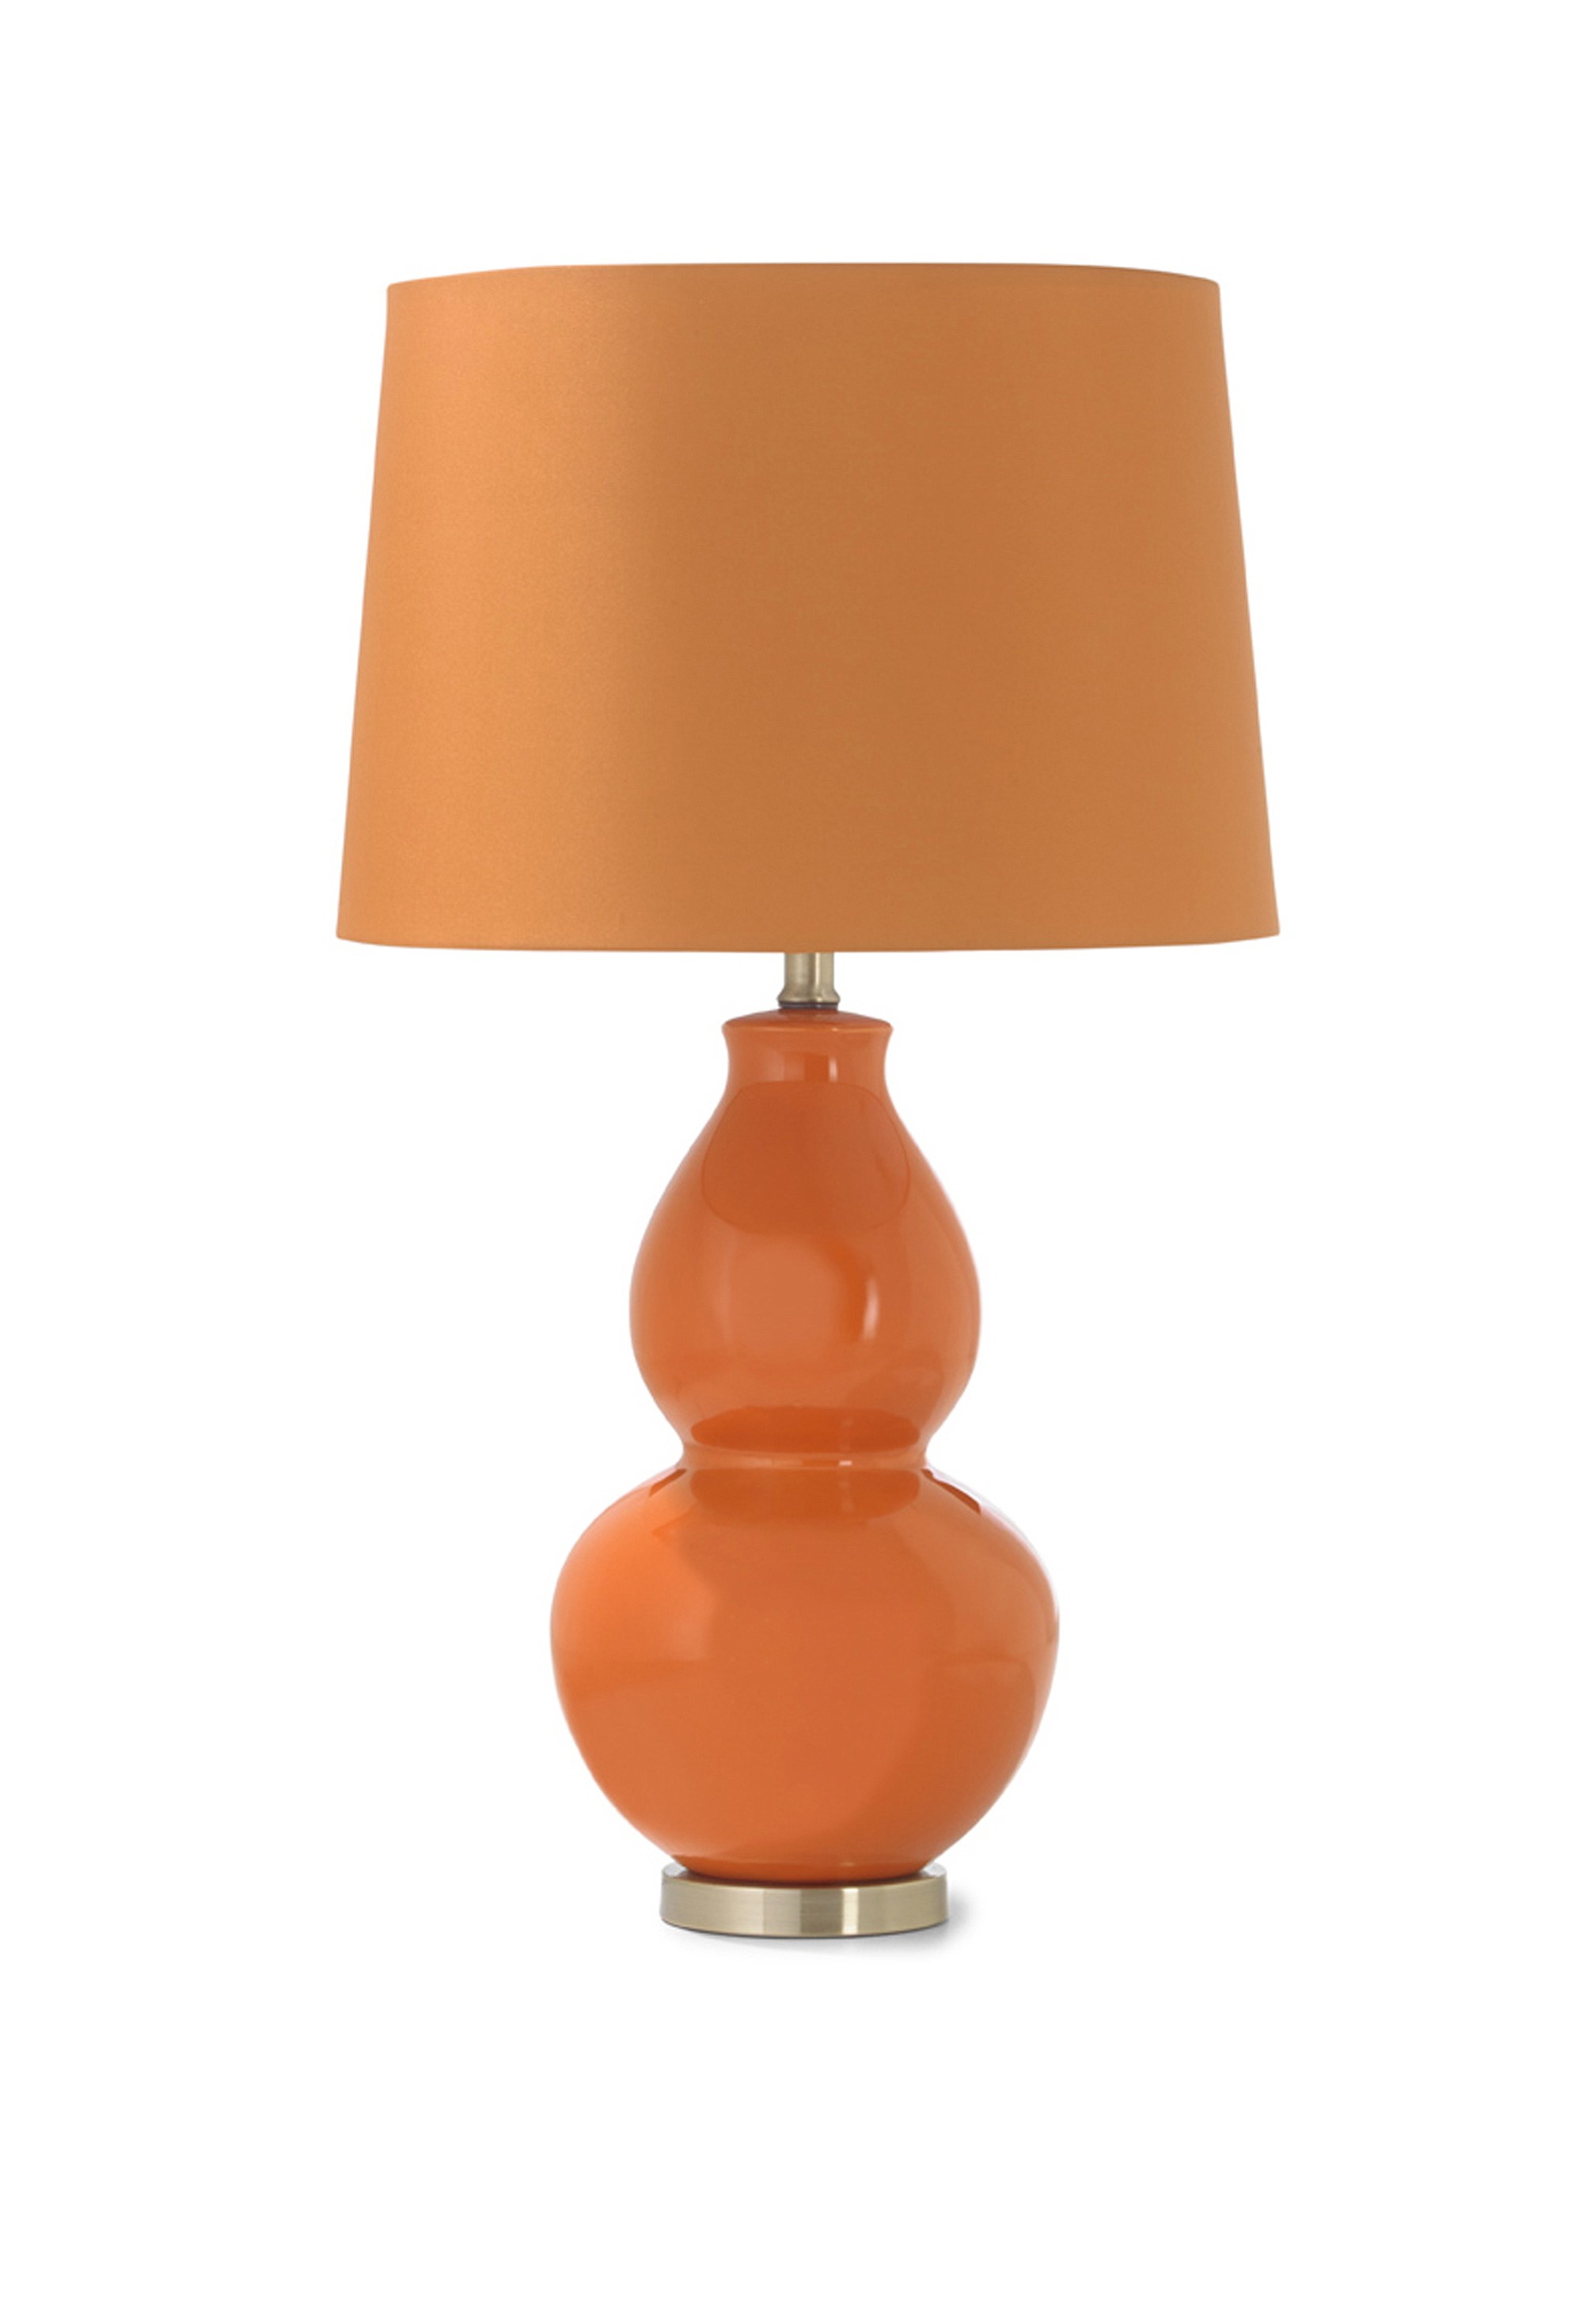 Orange ceramic lamp.